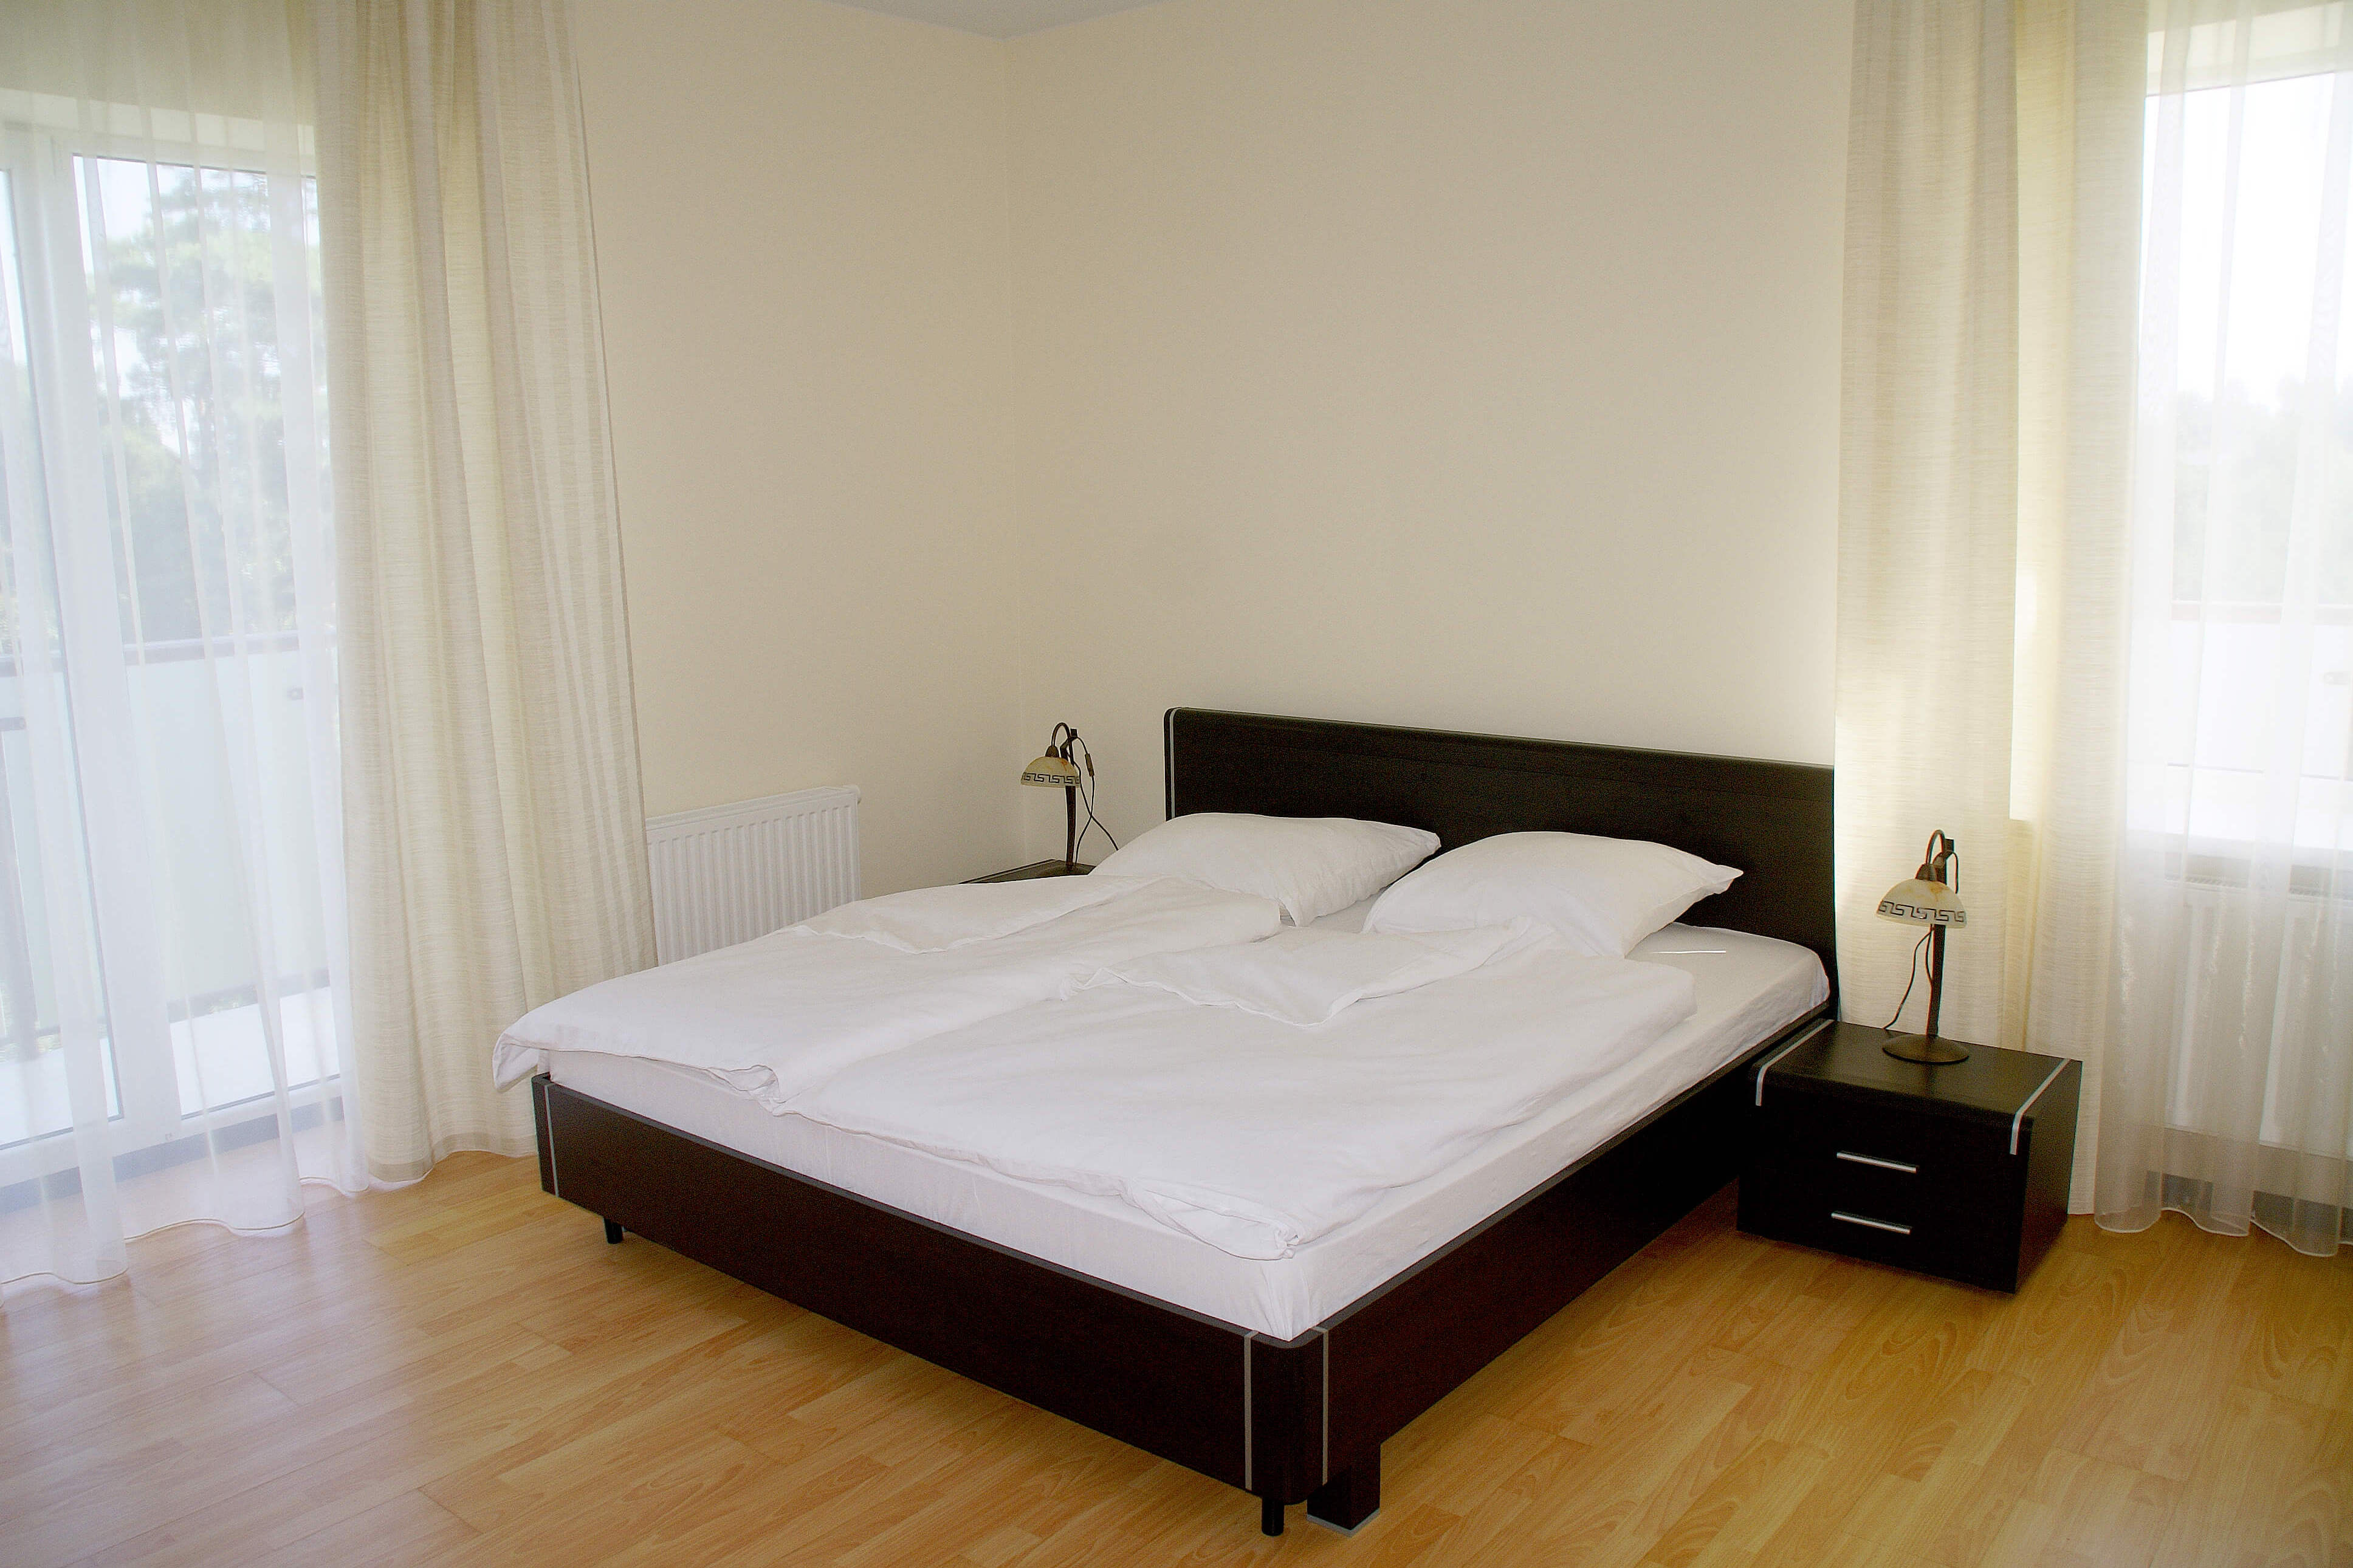 Большая кровать застелена белоснежным постельным бельем.